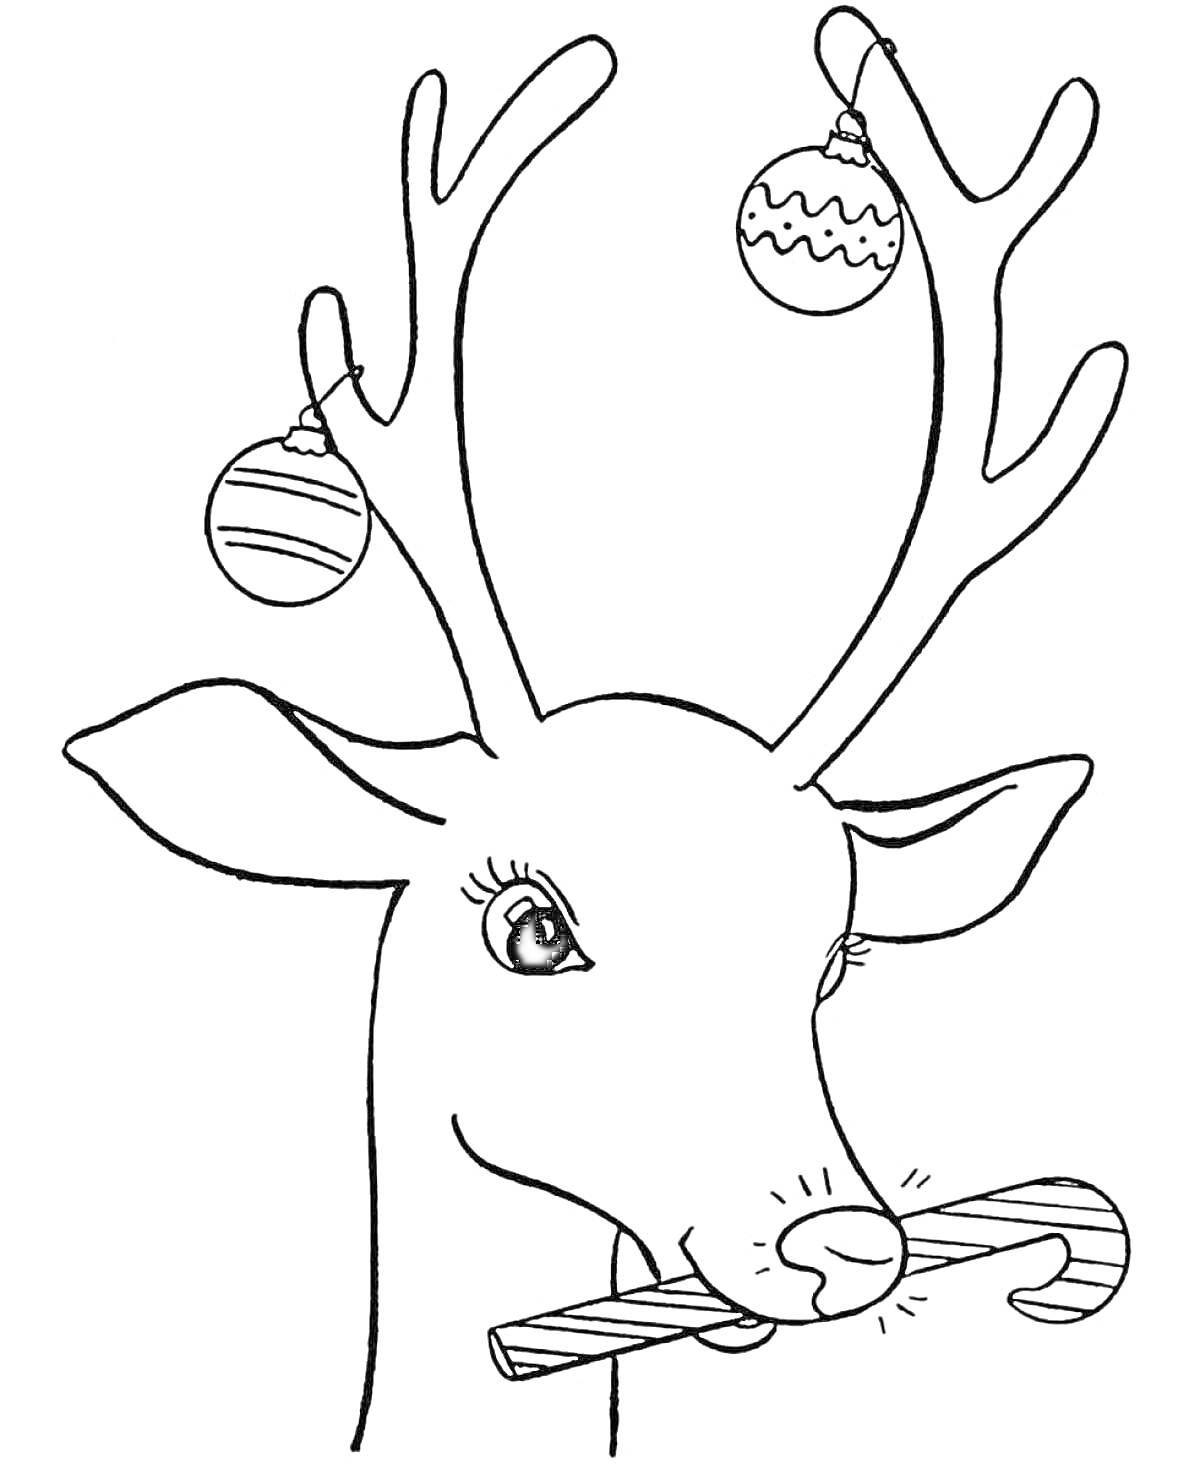 новогодний олень с елочными шарами на рогах и леденцом в зубах